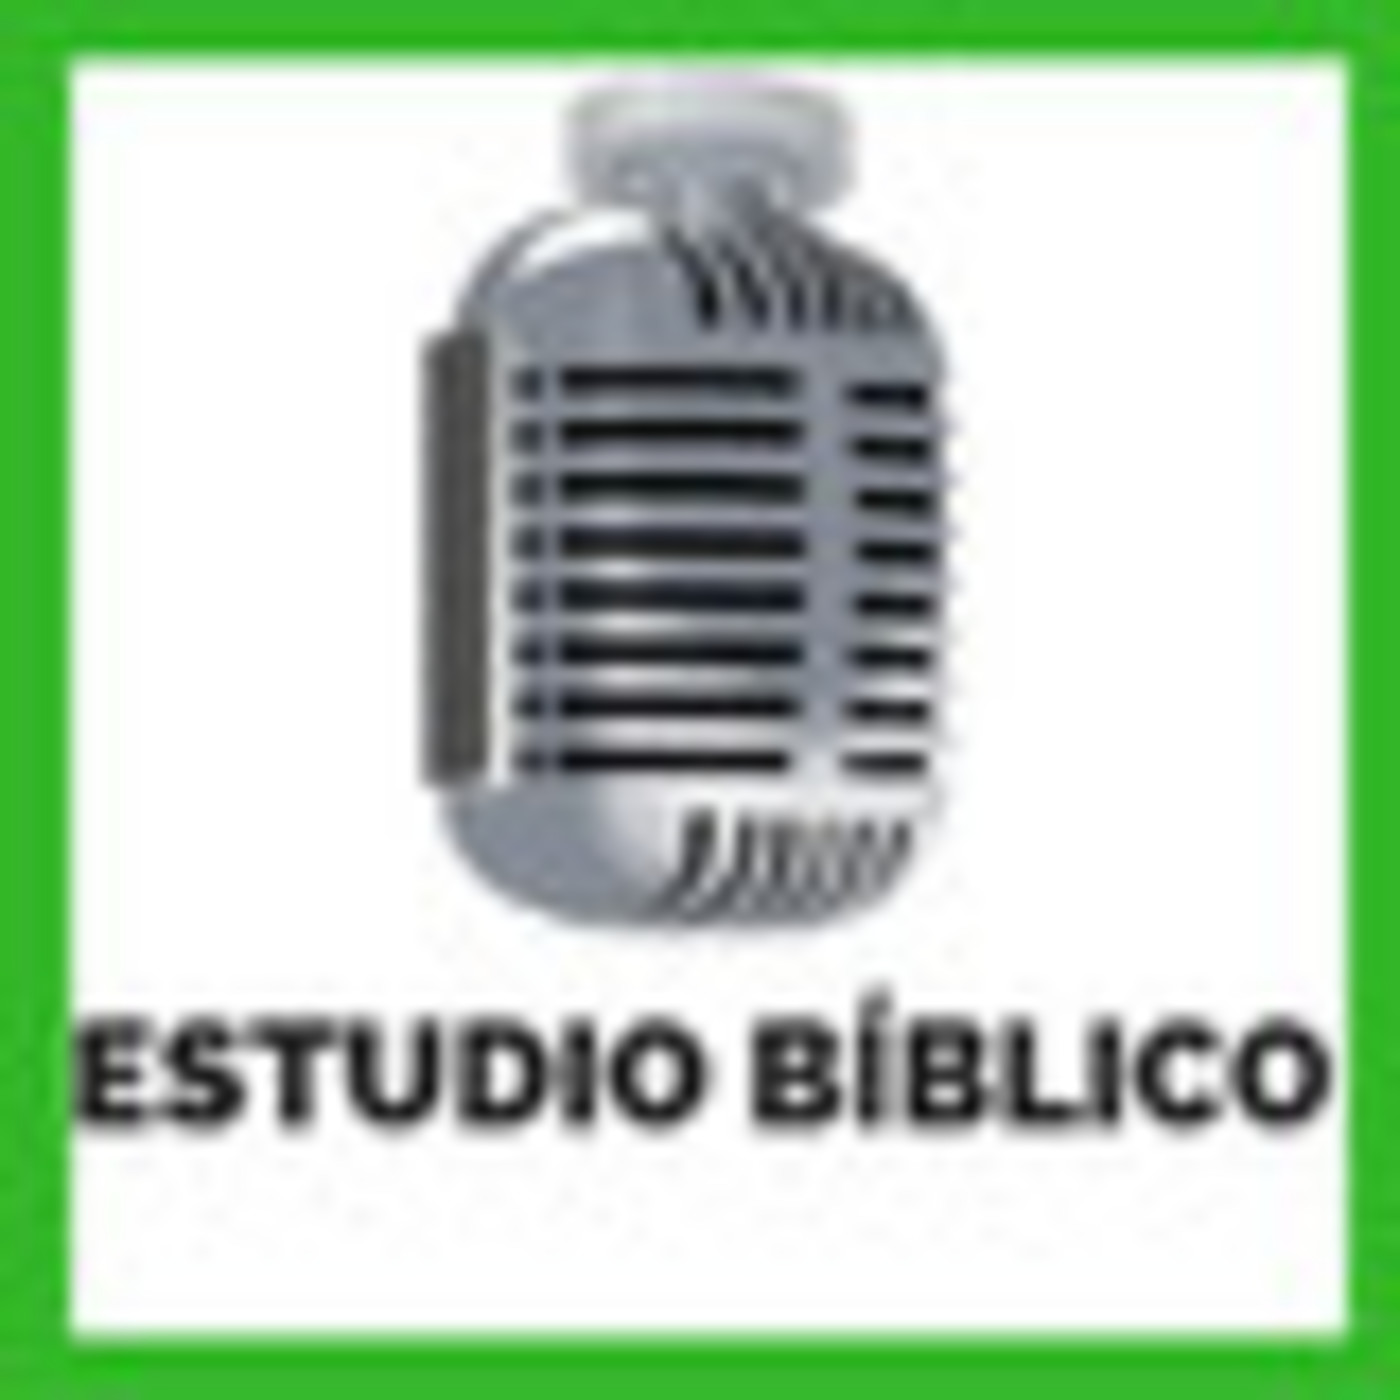 2019-09-03 | Estudio Bíblico | SERVIR A LOS NECESITADOS - LA GRACIA Y LAS BUENAS OBRAS